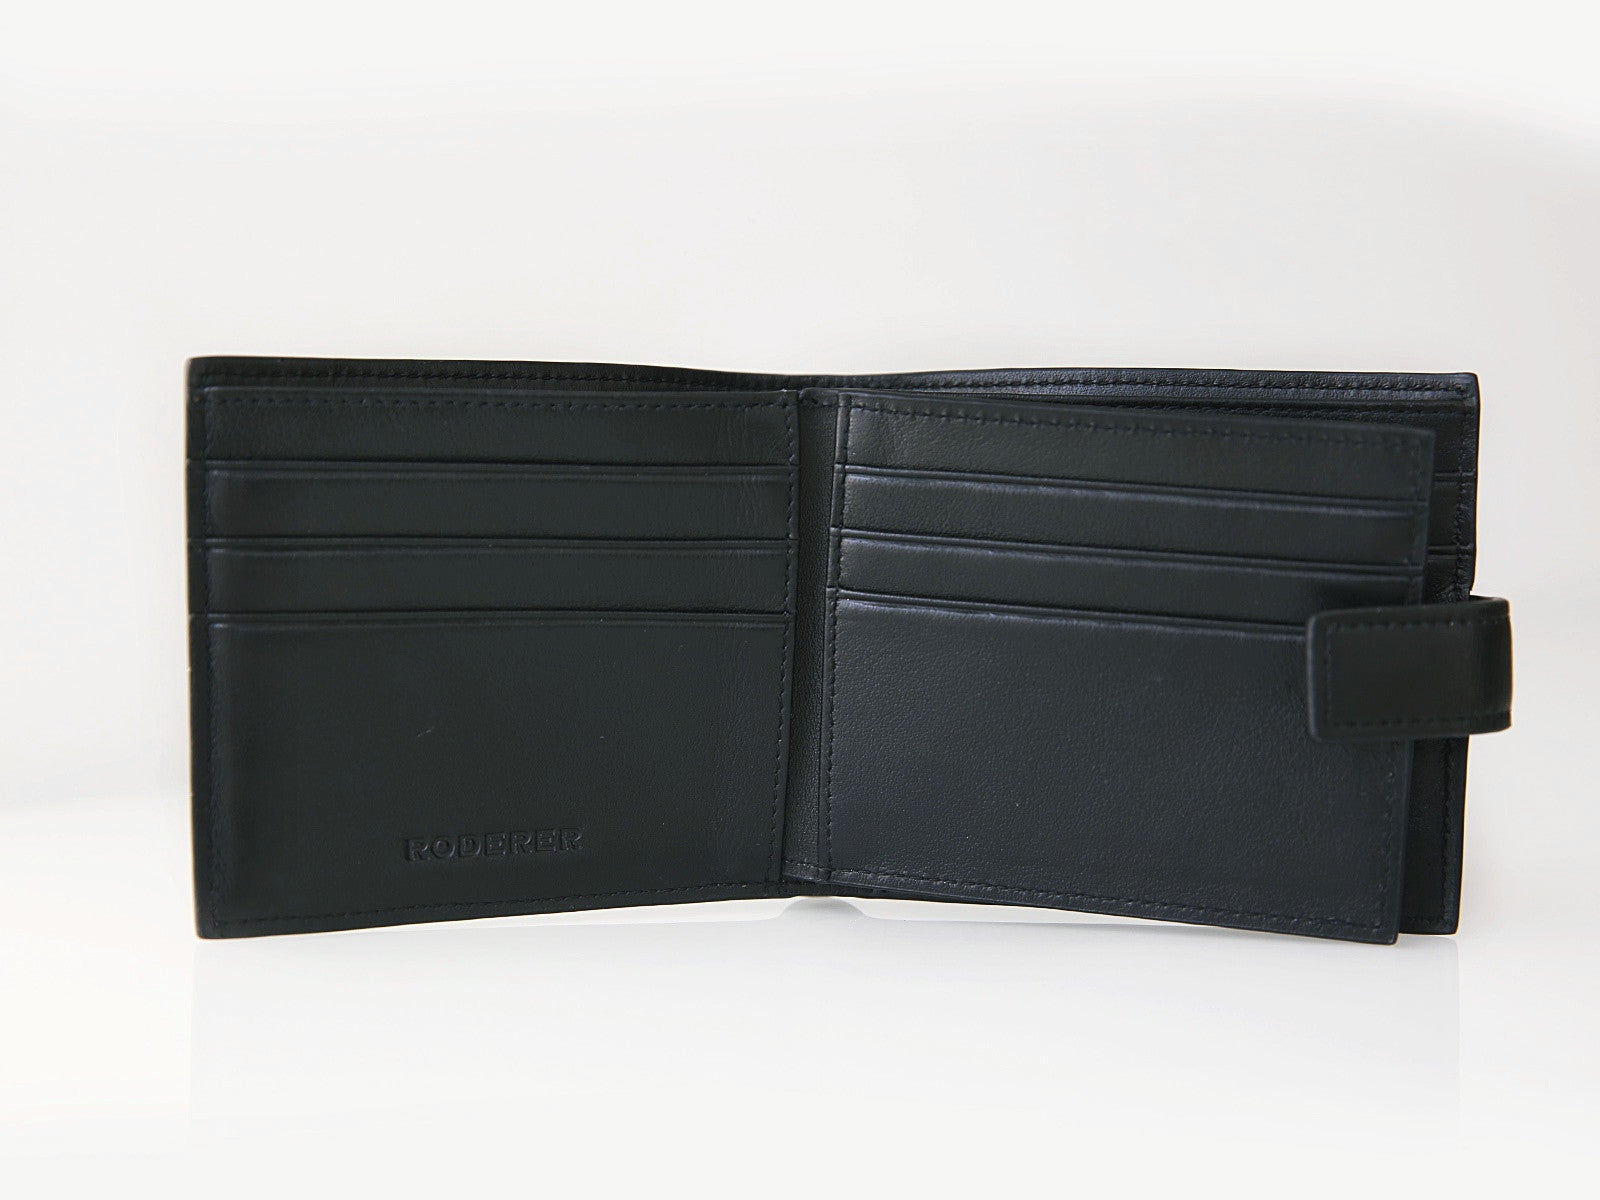 Bifold 8 Card Wallet Venezia Black | Leather Wallets for Men - RODERER